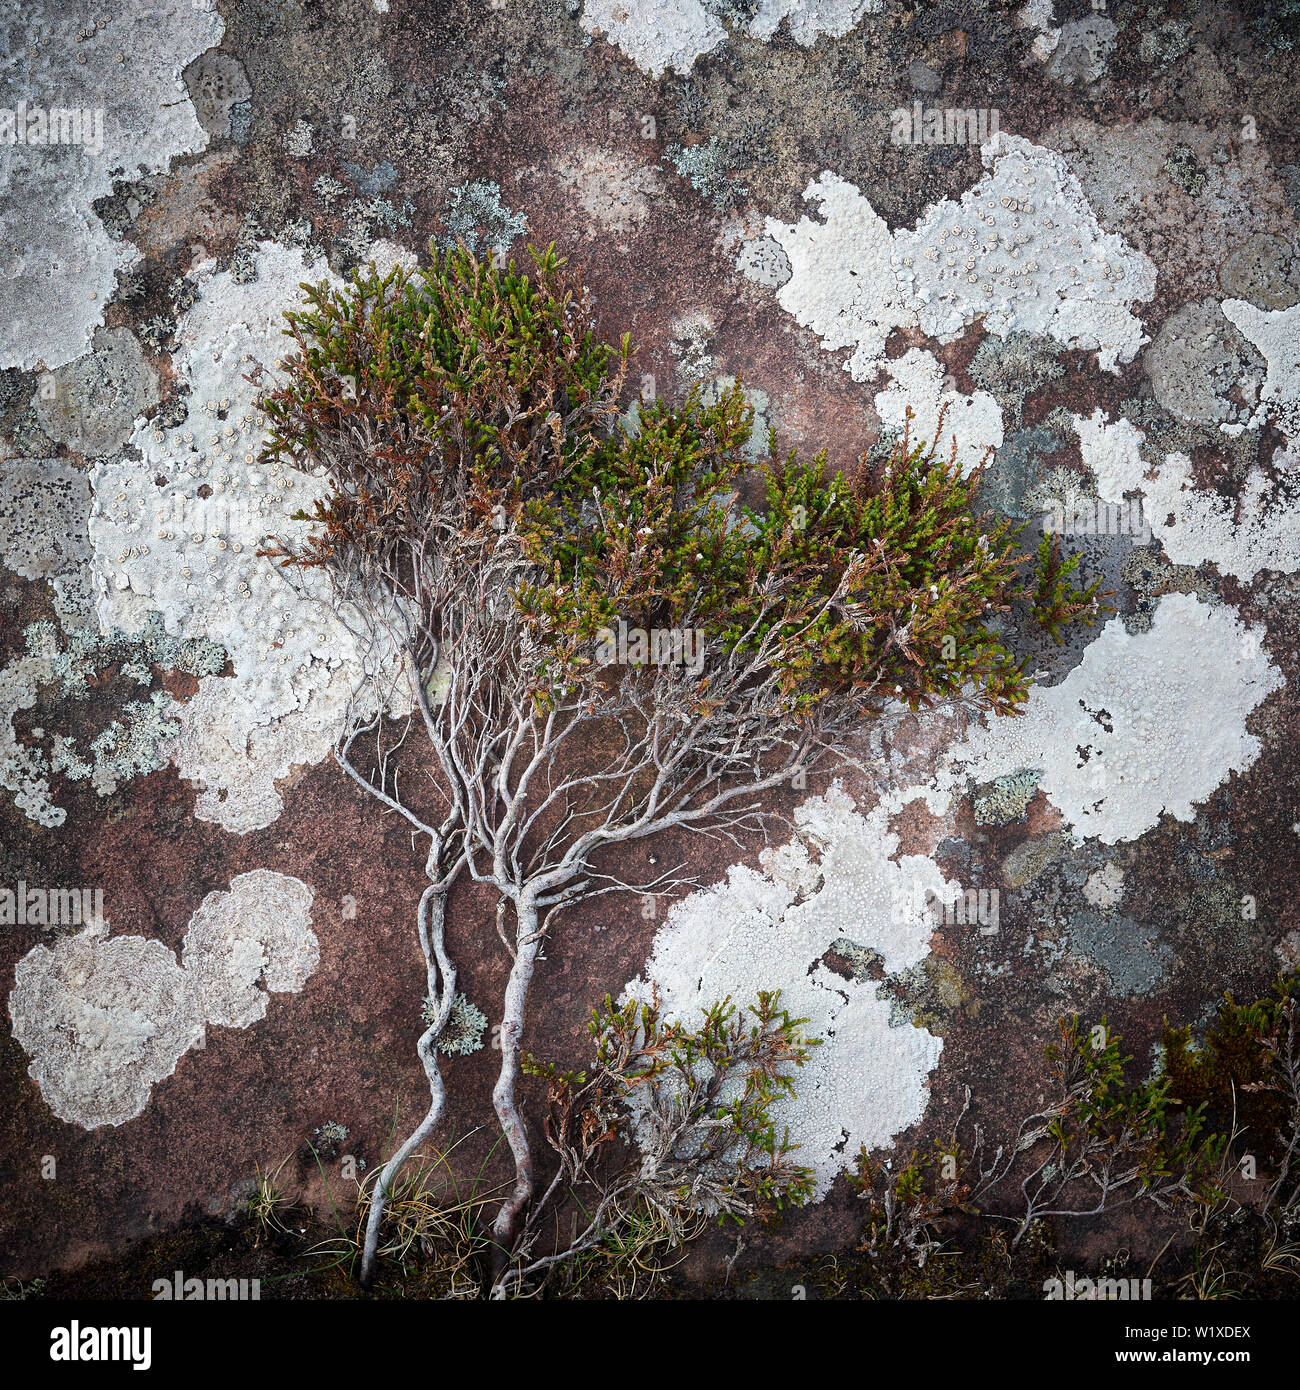 Heather impianto prostrati sul lichen coperto la roccia arenaria. Inverpolly, Wester Ross, Highland, Scozia Foto Stock